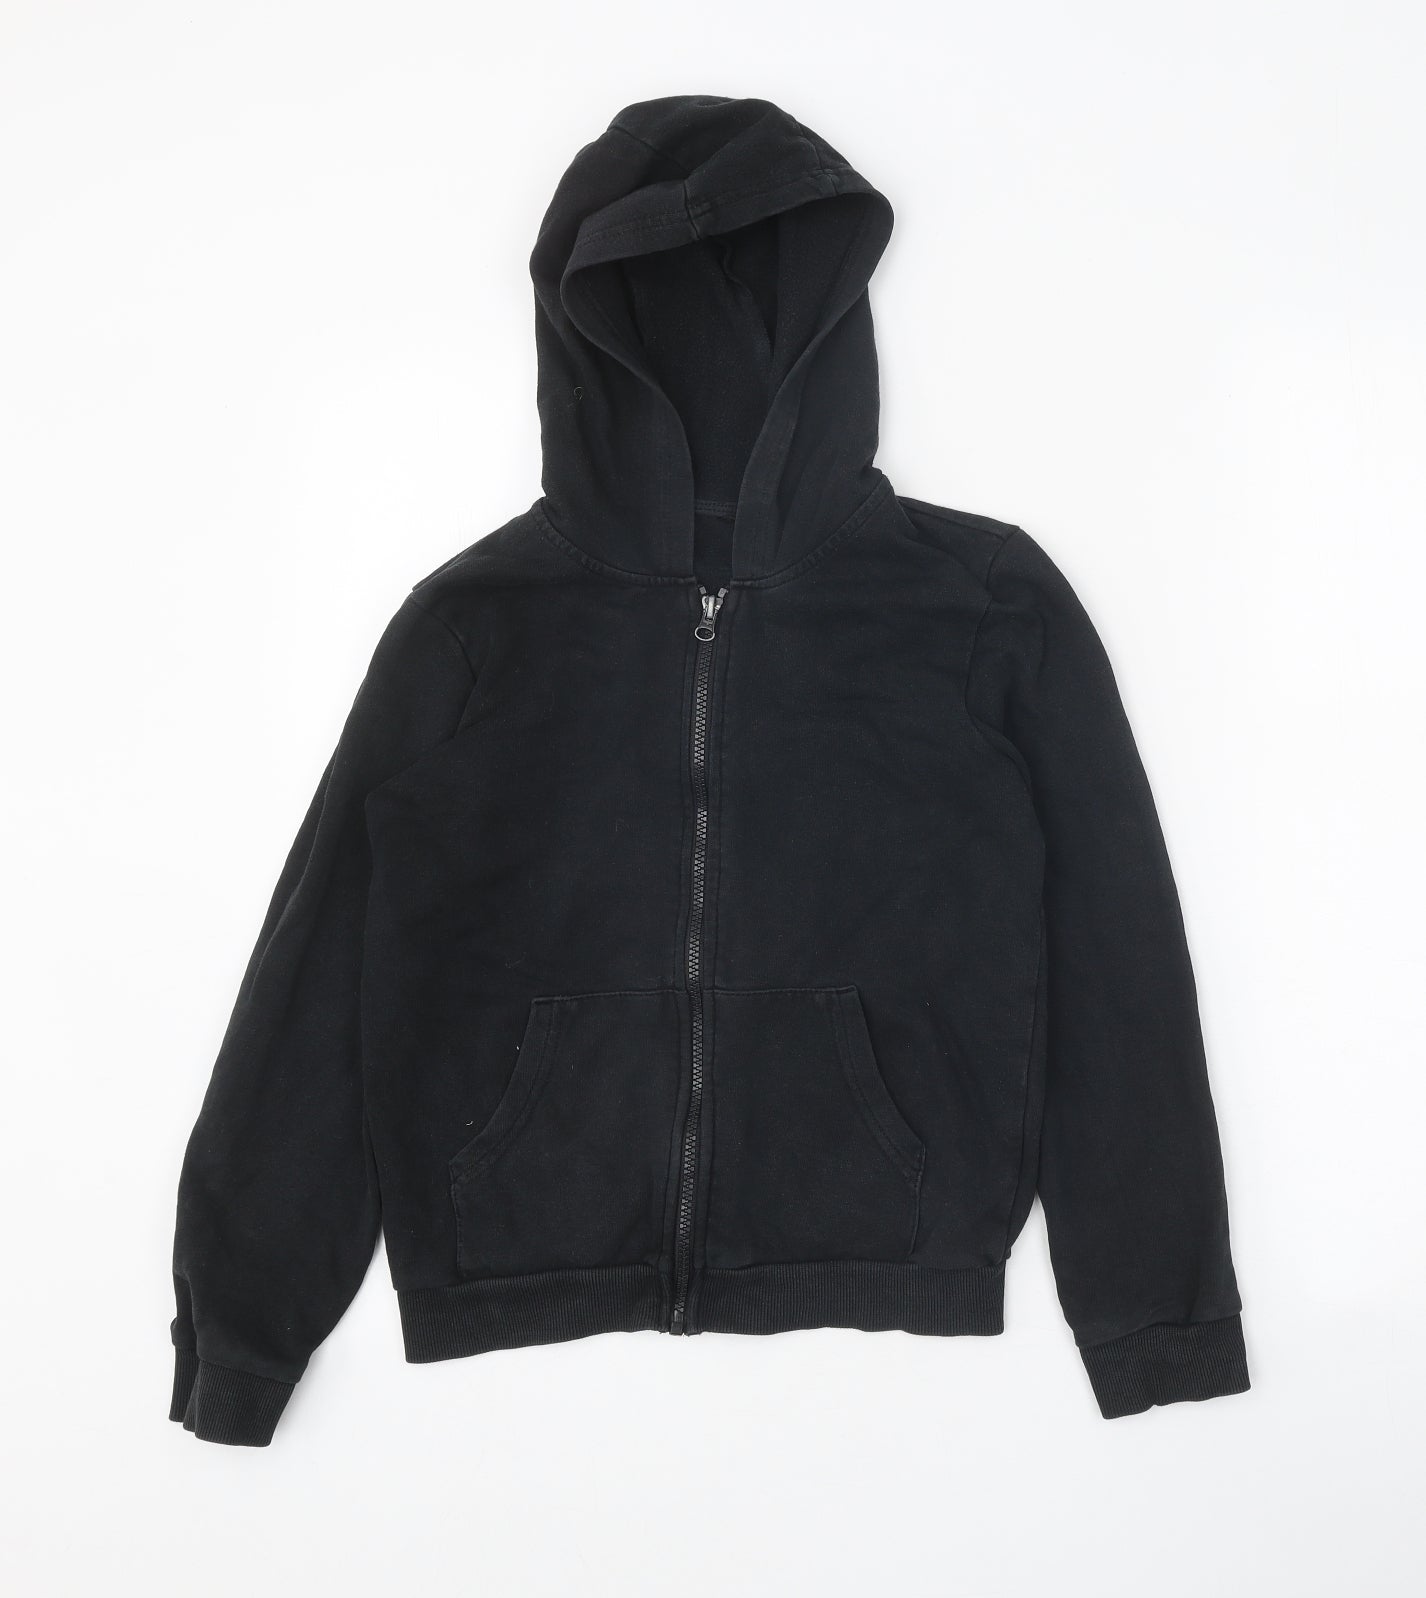 George Boys Black Jacket Size 10-11 Years Zip